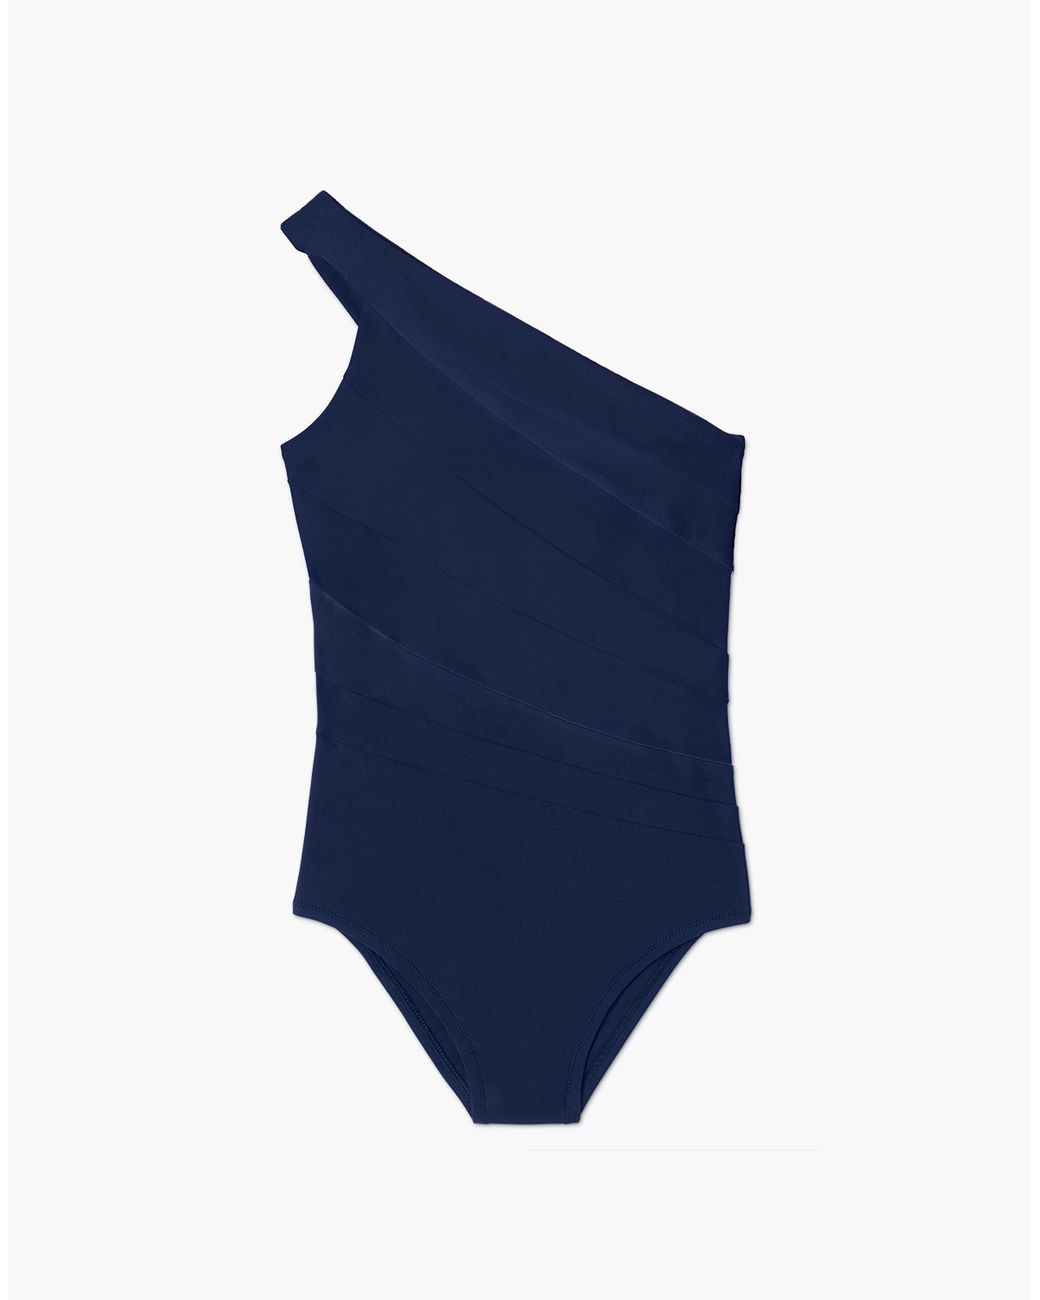 https://cdna.lystit.com/1040/1300/n/photos/madewell/a86cff6f/mw-designer-BLUE-Summersalt-Sidestroke-One-piece-Swimsuit.jpeg